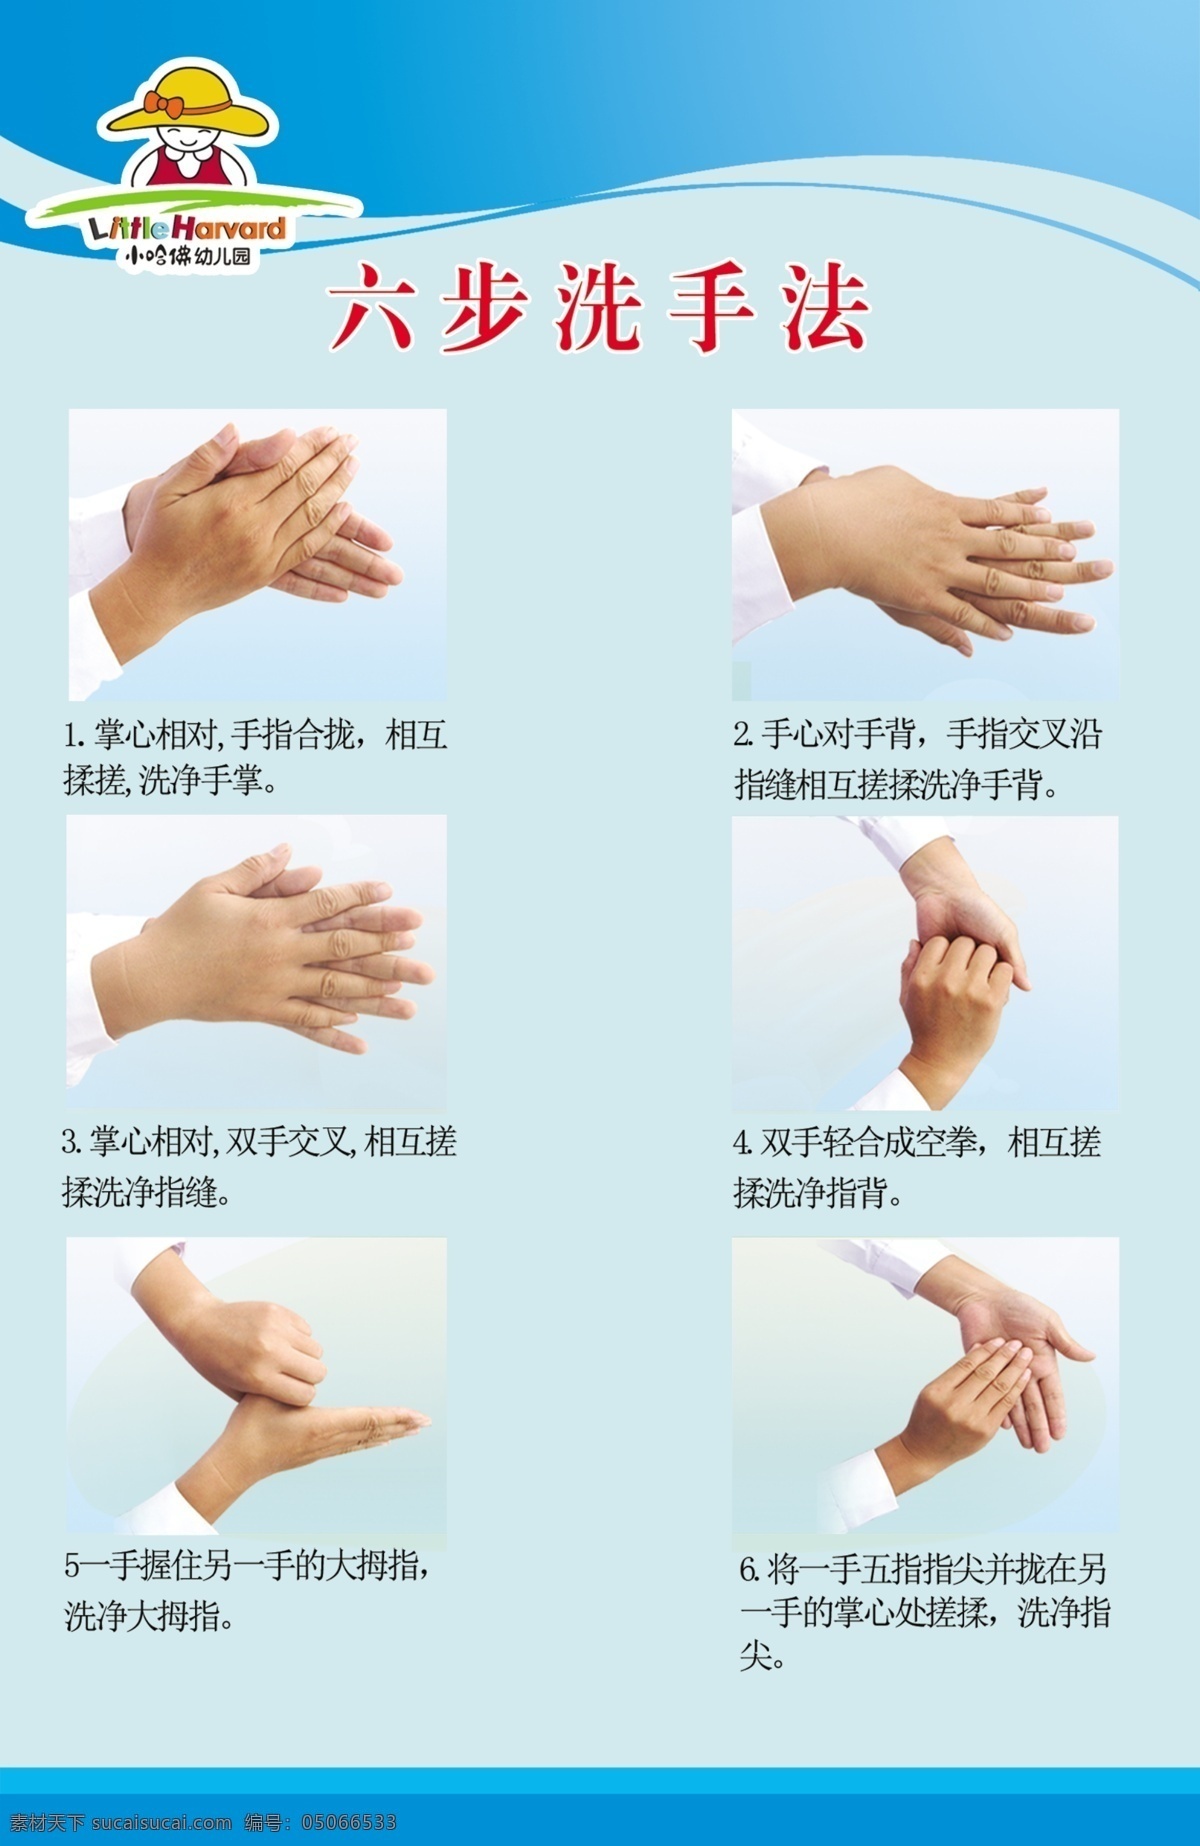 幼儿园洗手 宣传板 幼儿园 洗手 6步法 步法 展板模板 广告设计模板 源文件